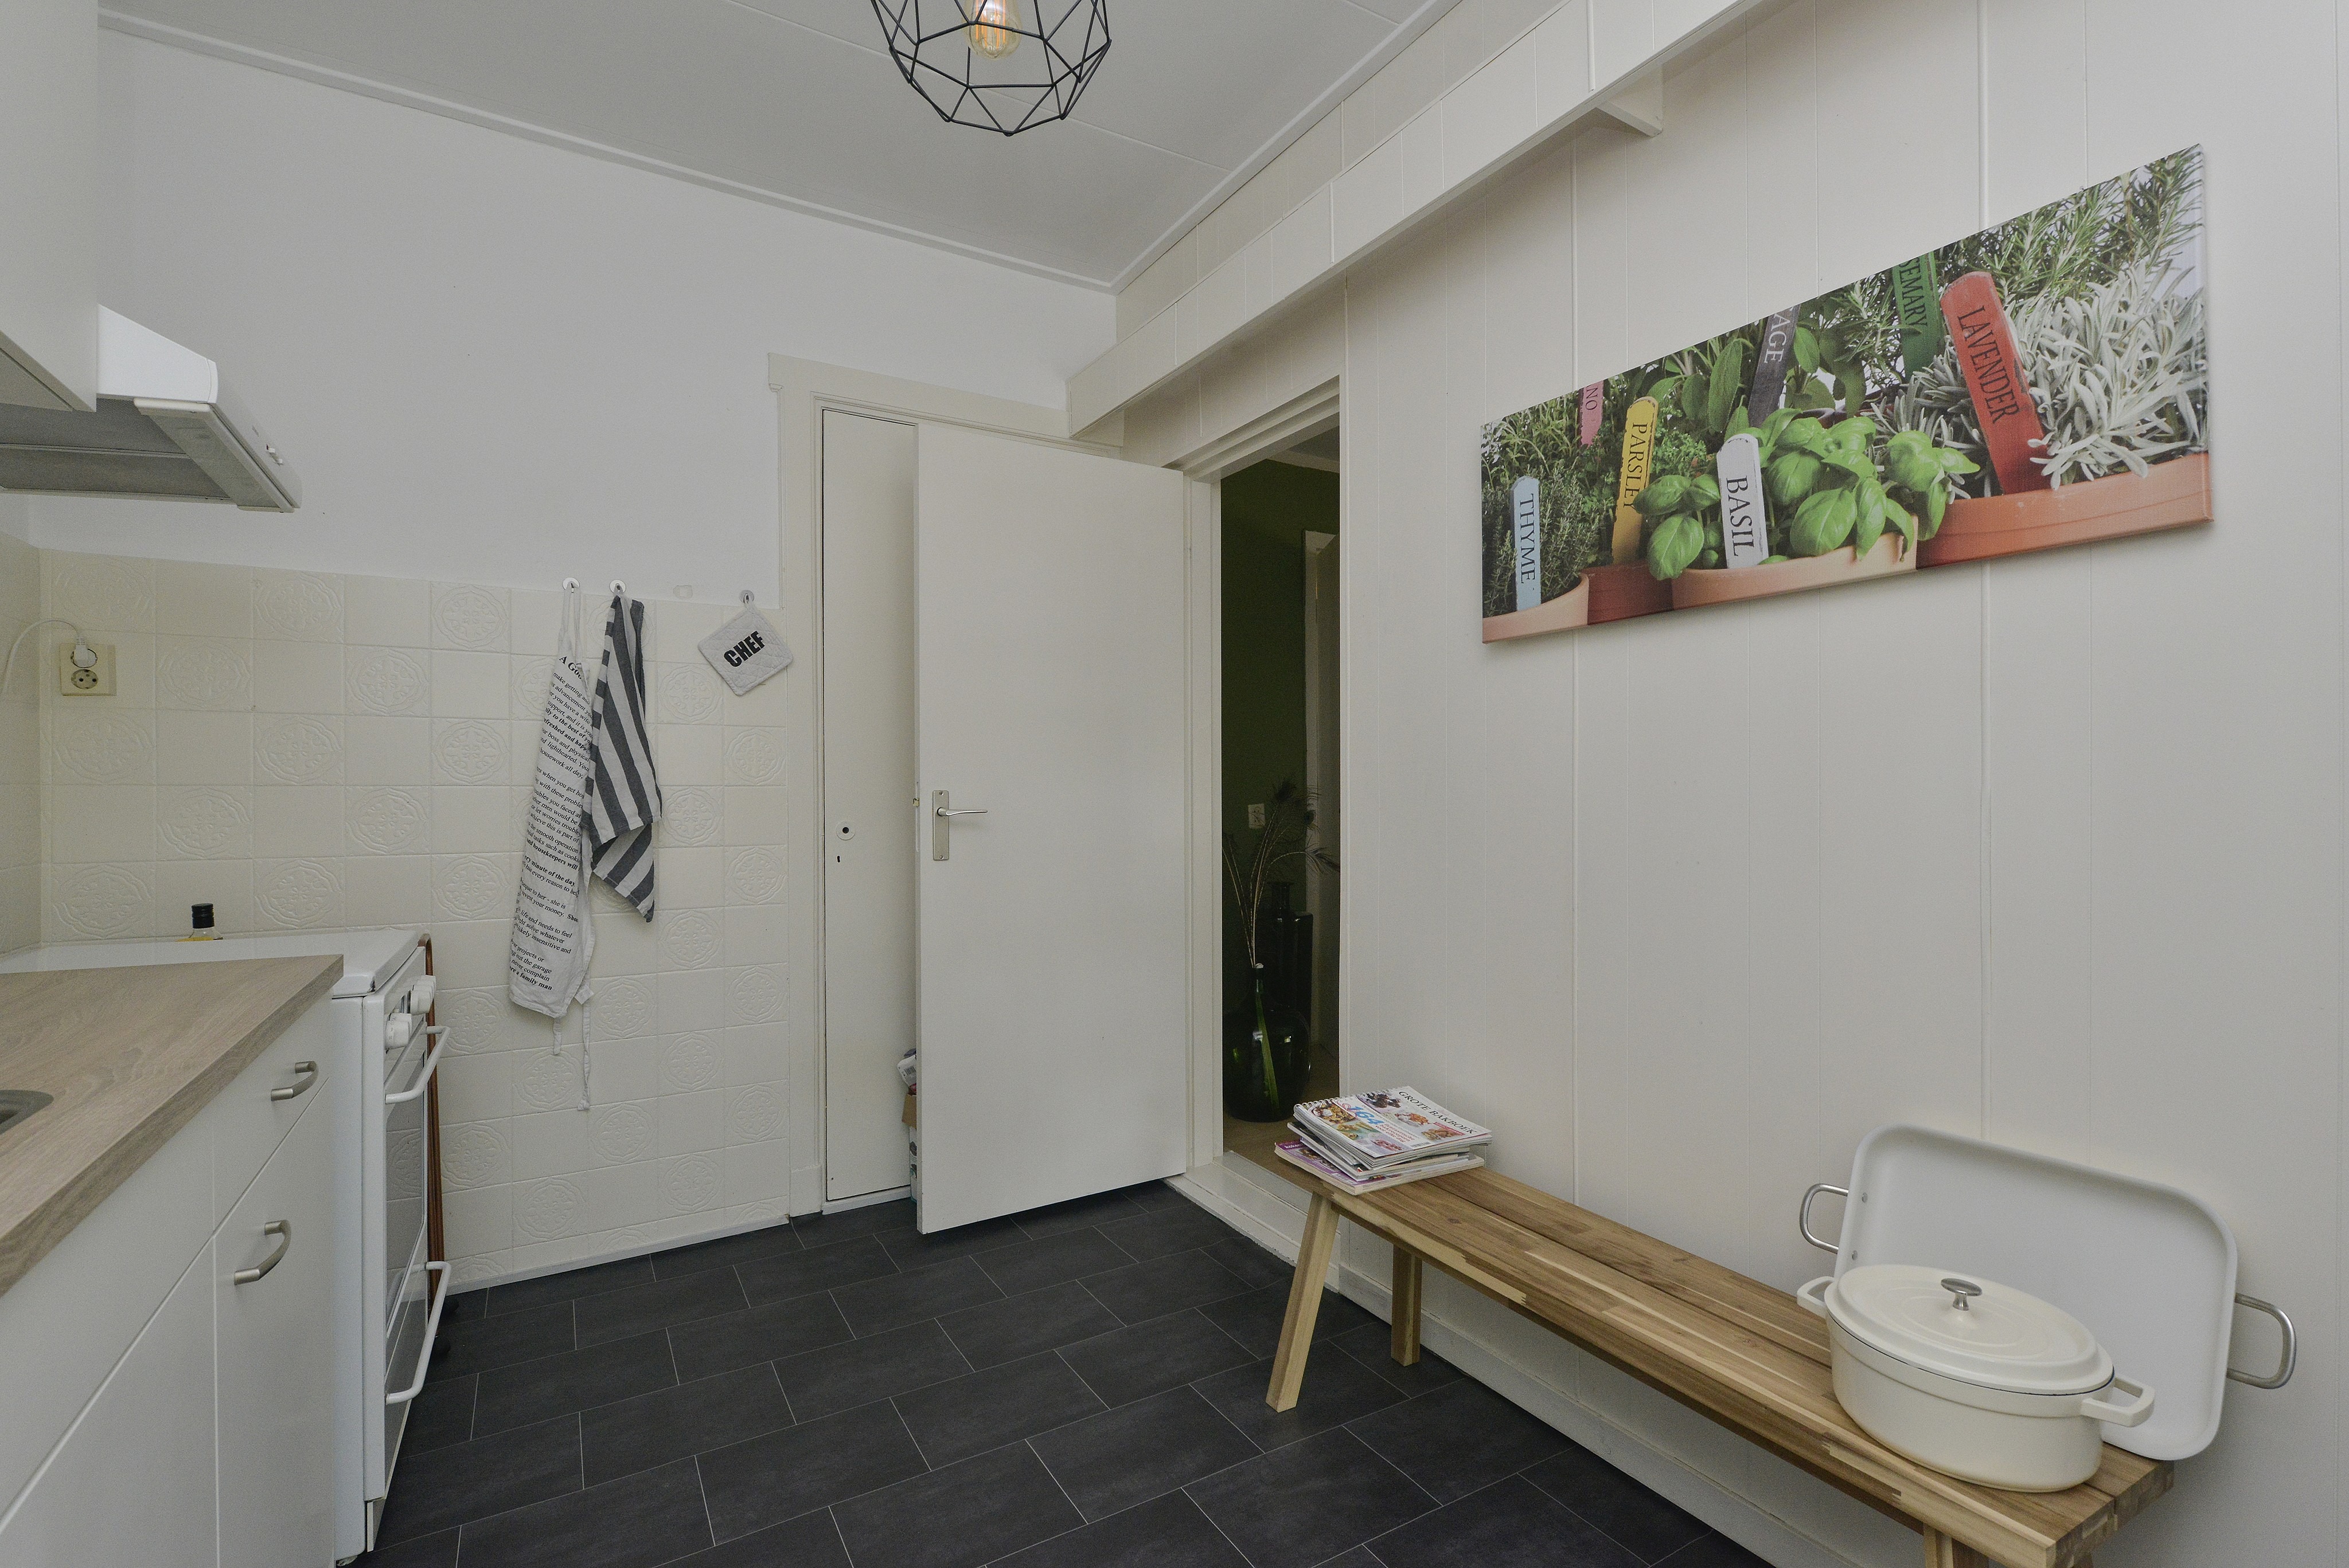 Woning / appartement - Soest - Soesterbergsestraat 9 A, B en C